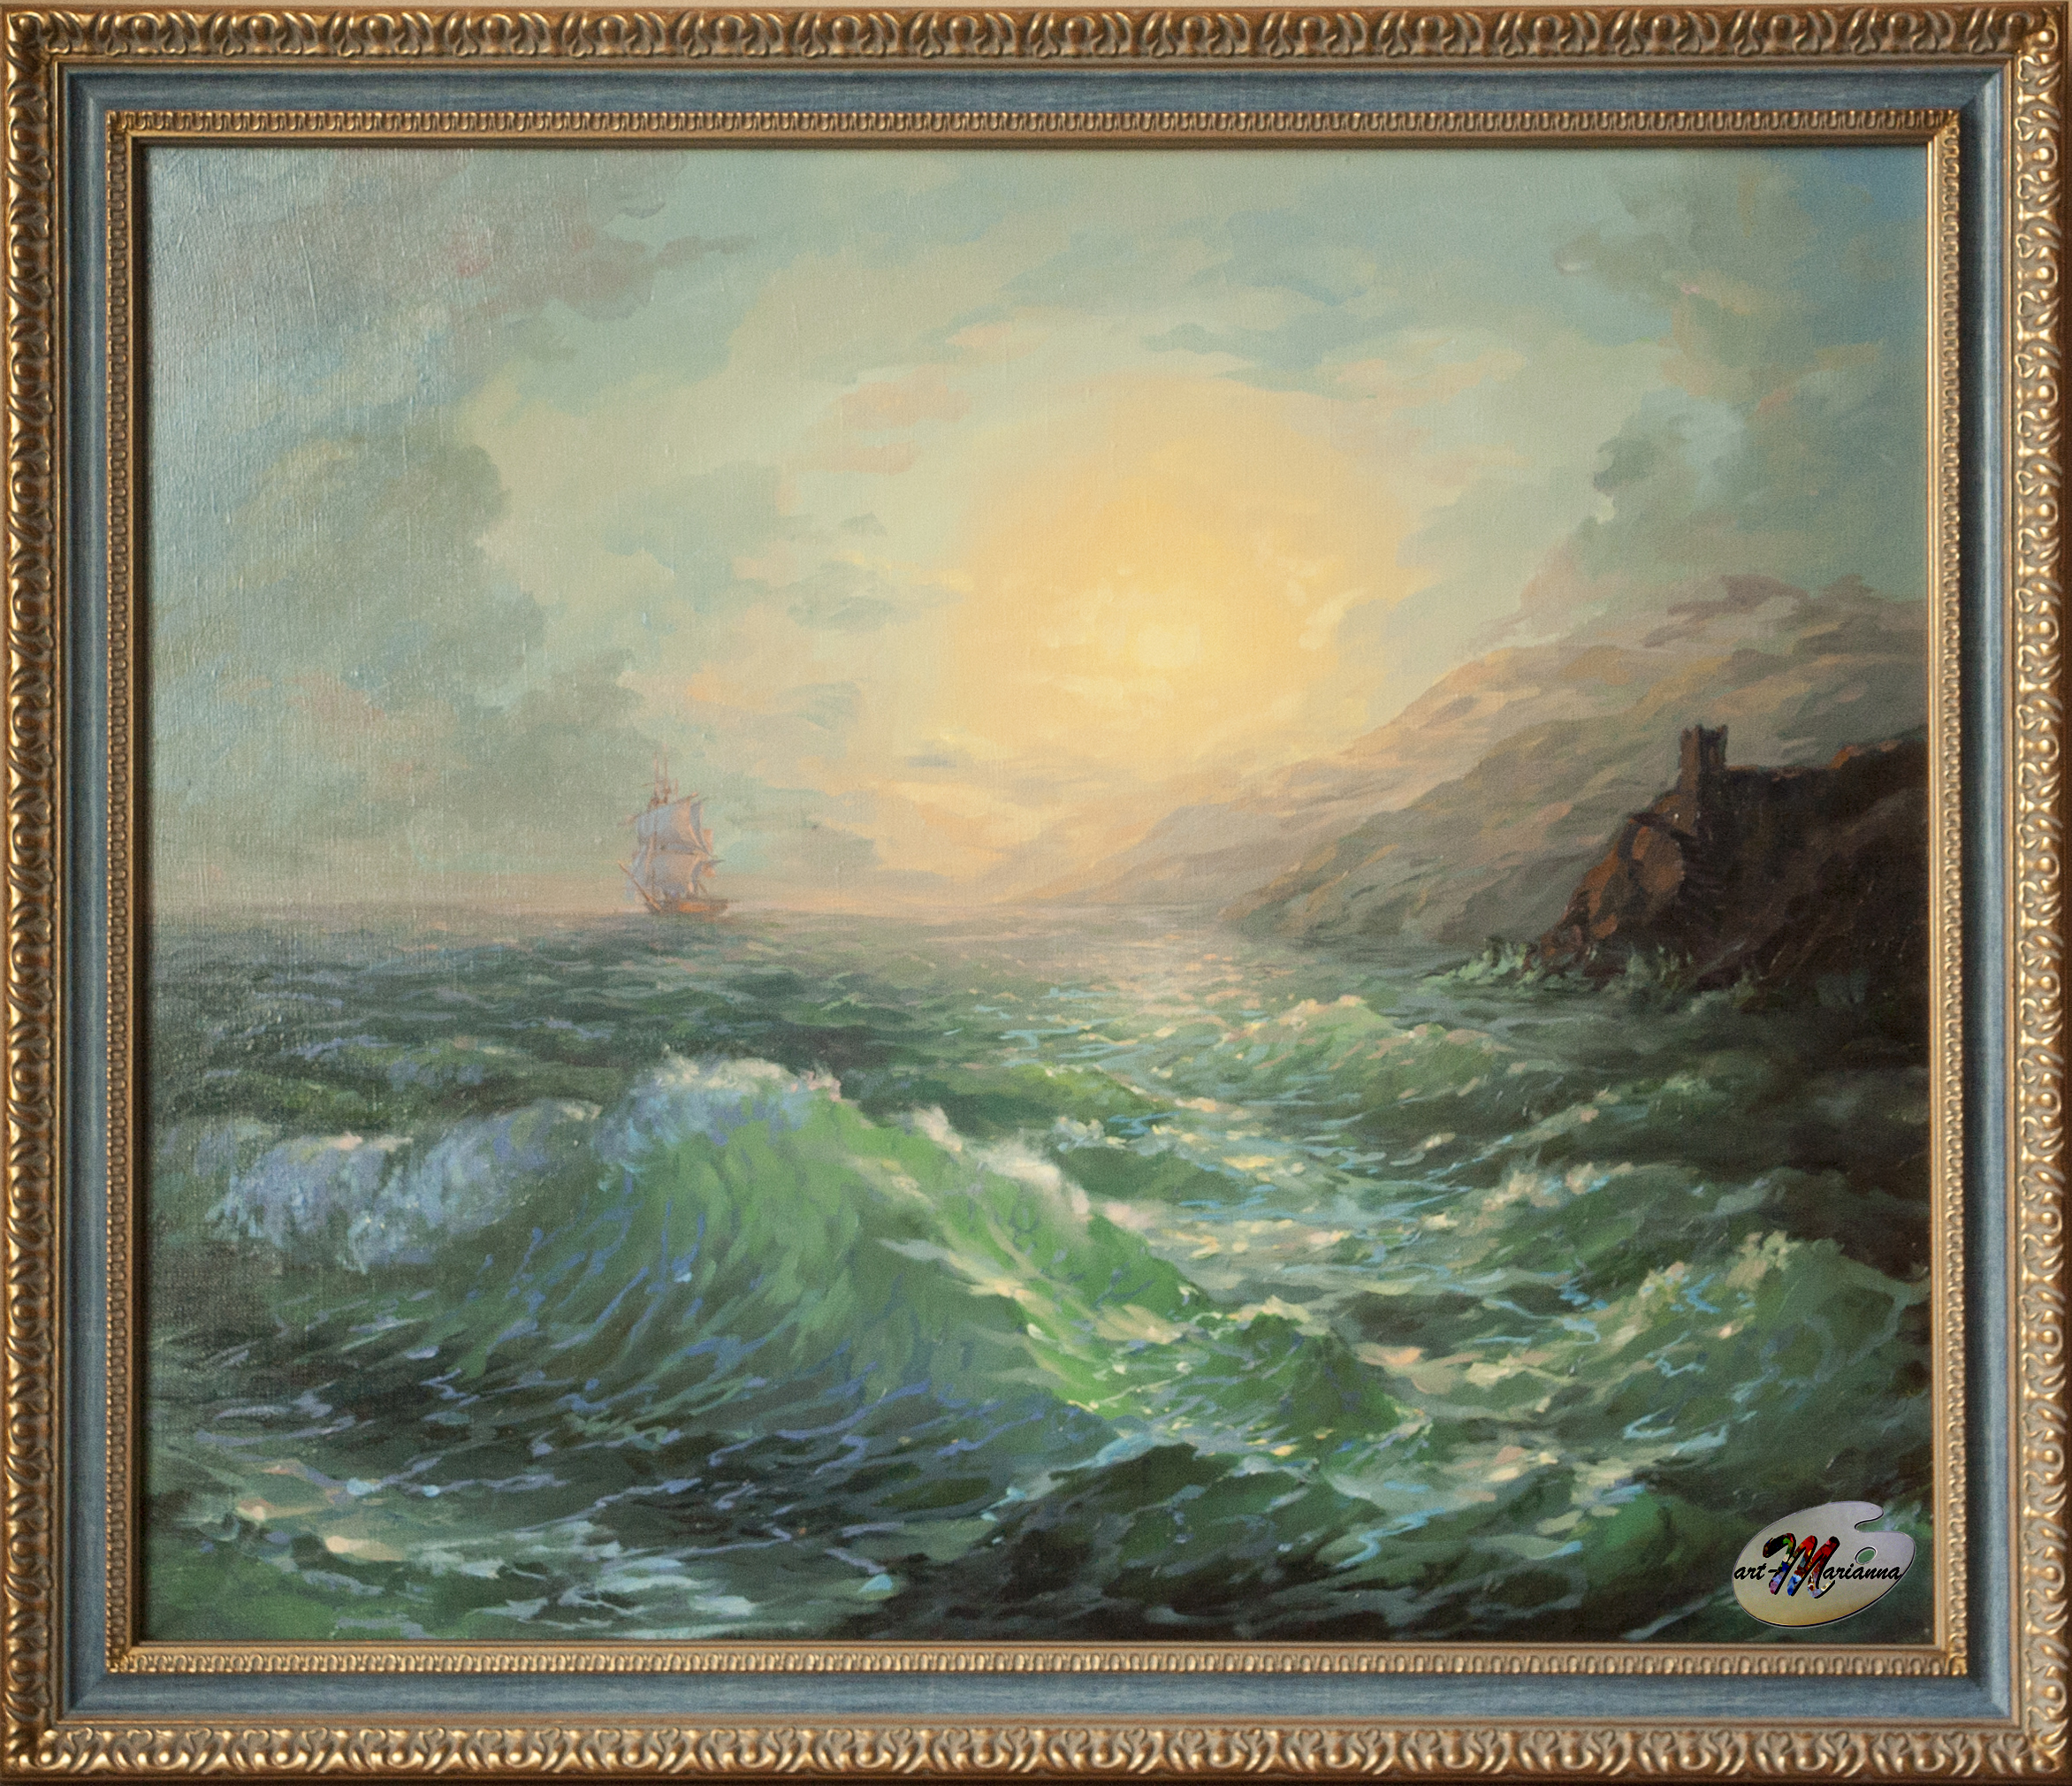 Картина "Закат" выполнена по мотивам произведений Айвазовского.